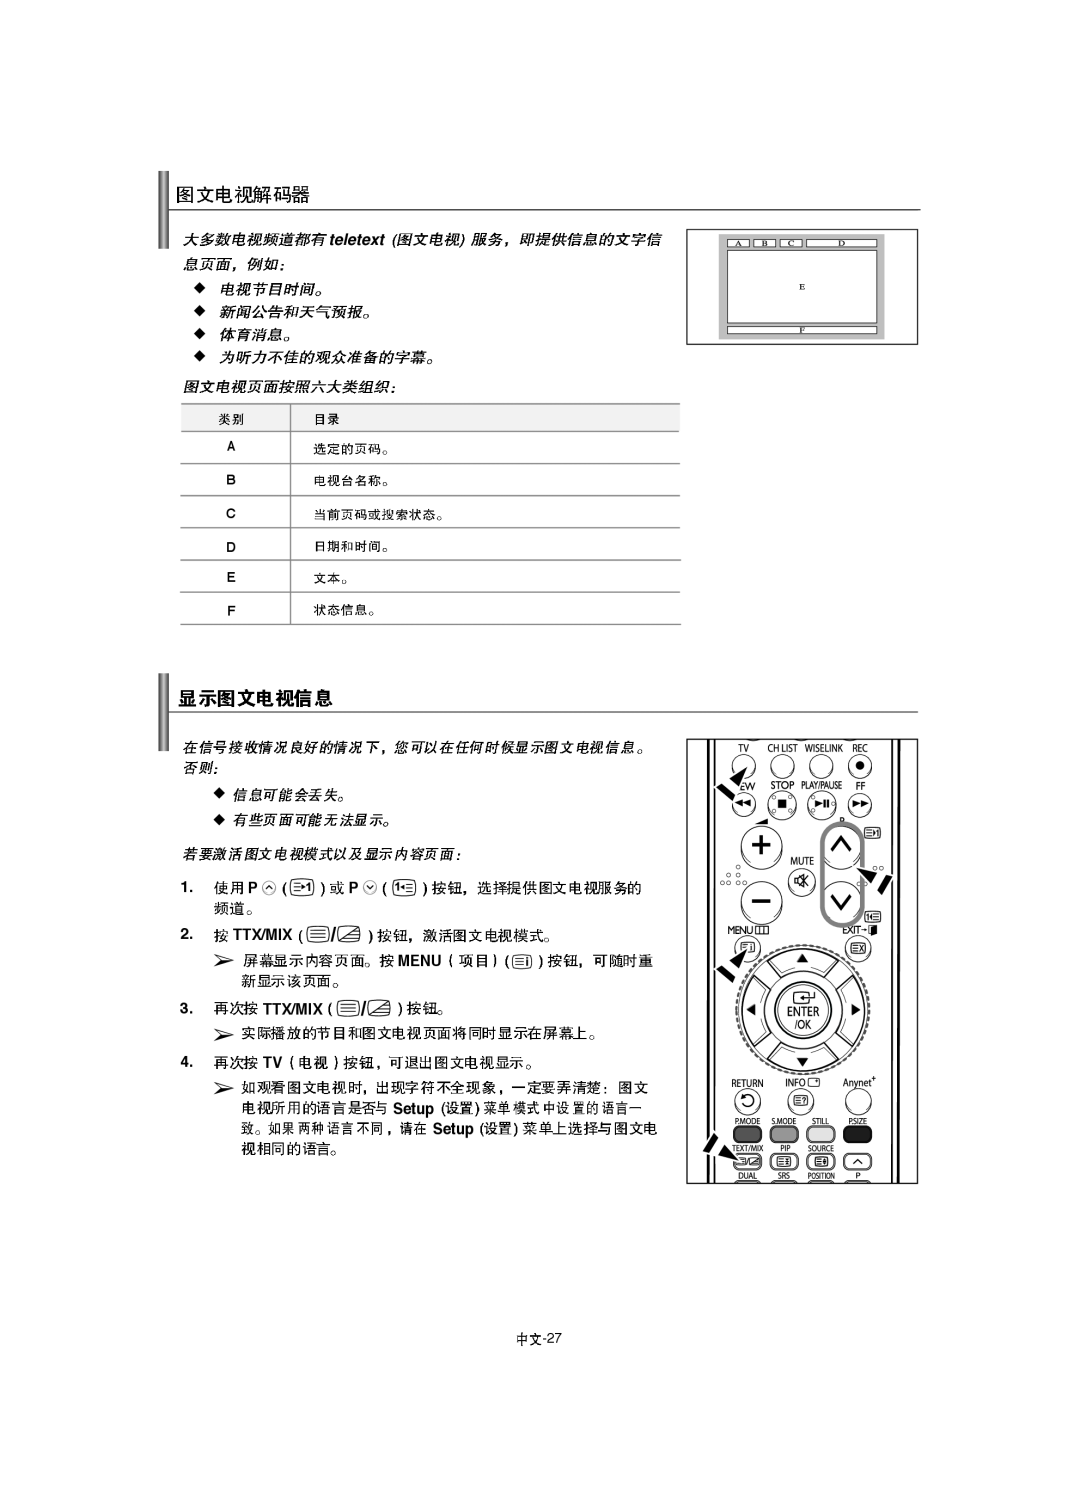 Samsung LA40F8, LA52F8, LA46F8 manual teletext, P P 2. TTX/MIX MENU 3. TTX/MIX, 4. TV, Setup Setup, A B C D E F 